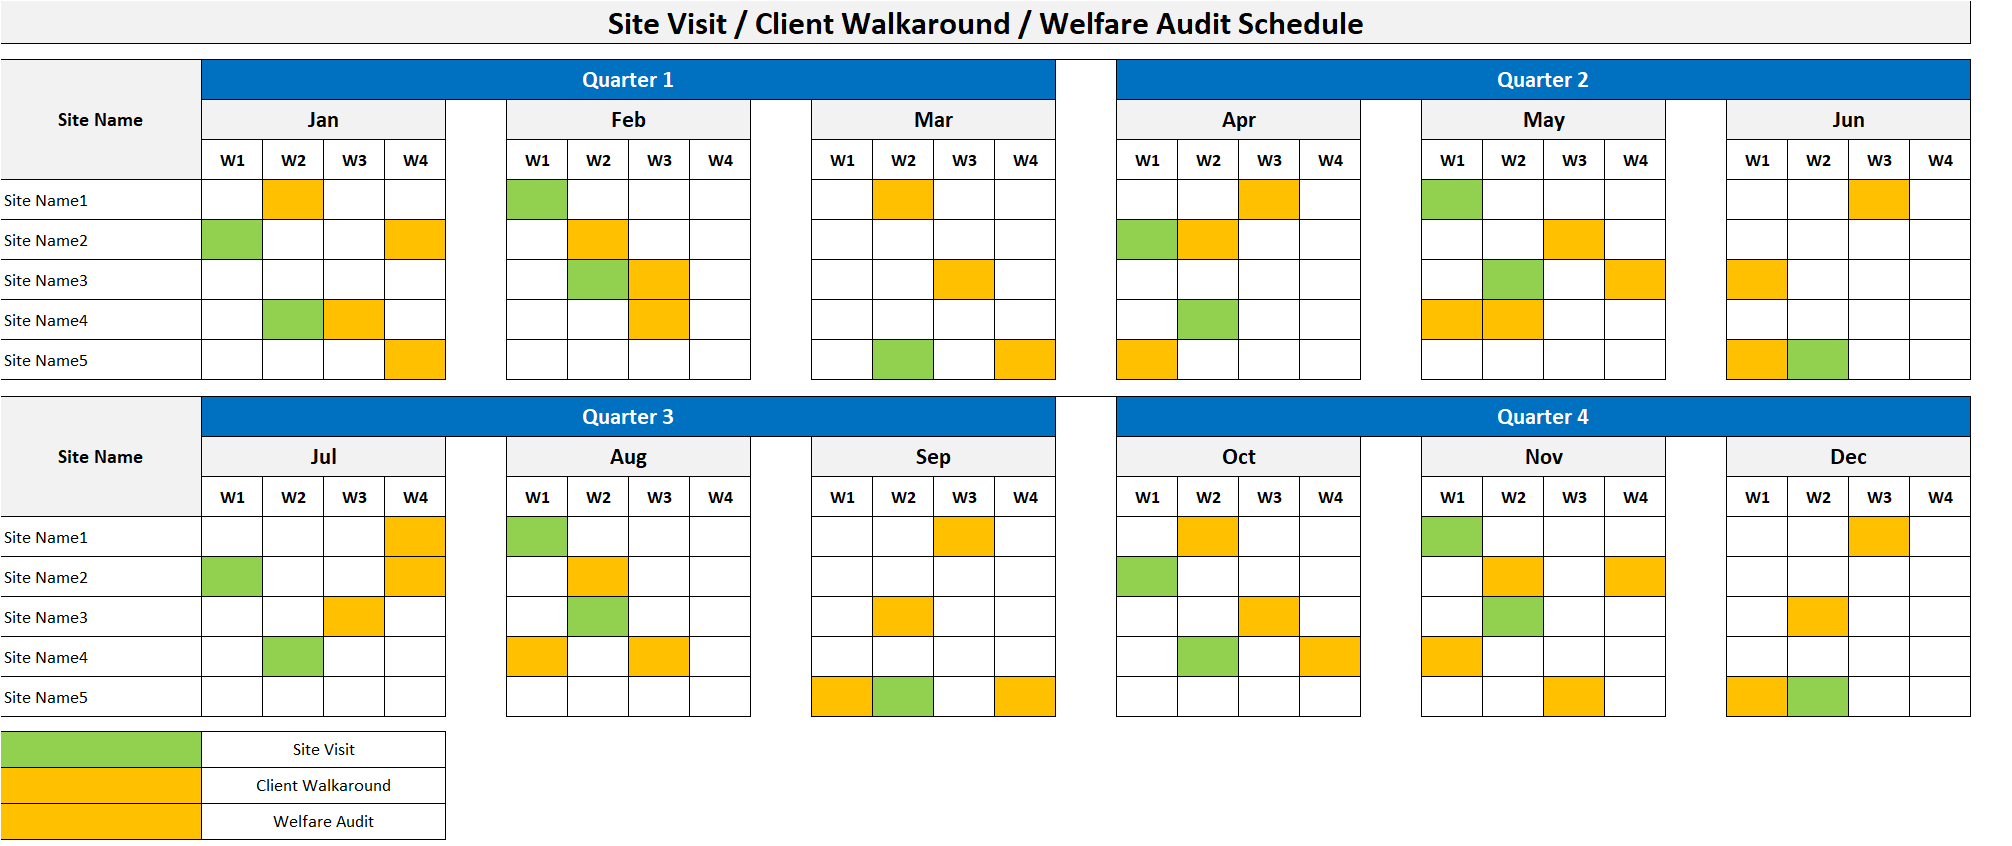 Site Visit-Client Walkaround-Welfare Audit Schedule